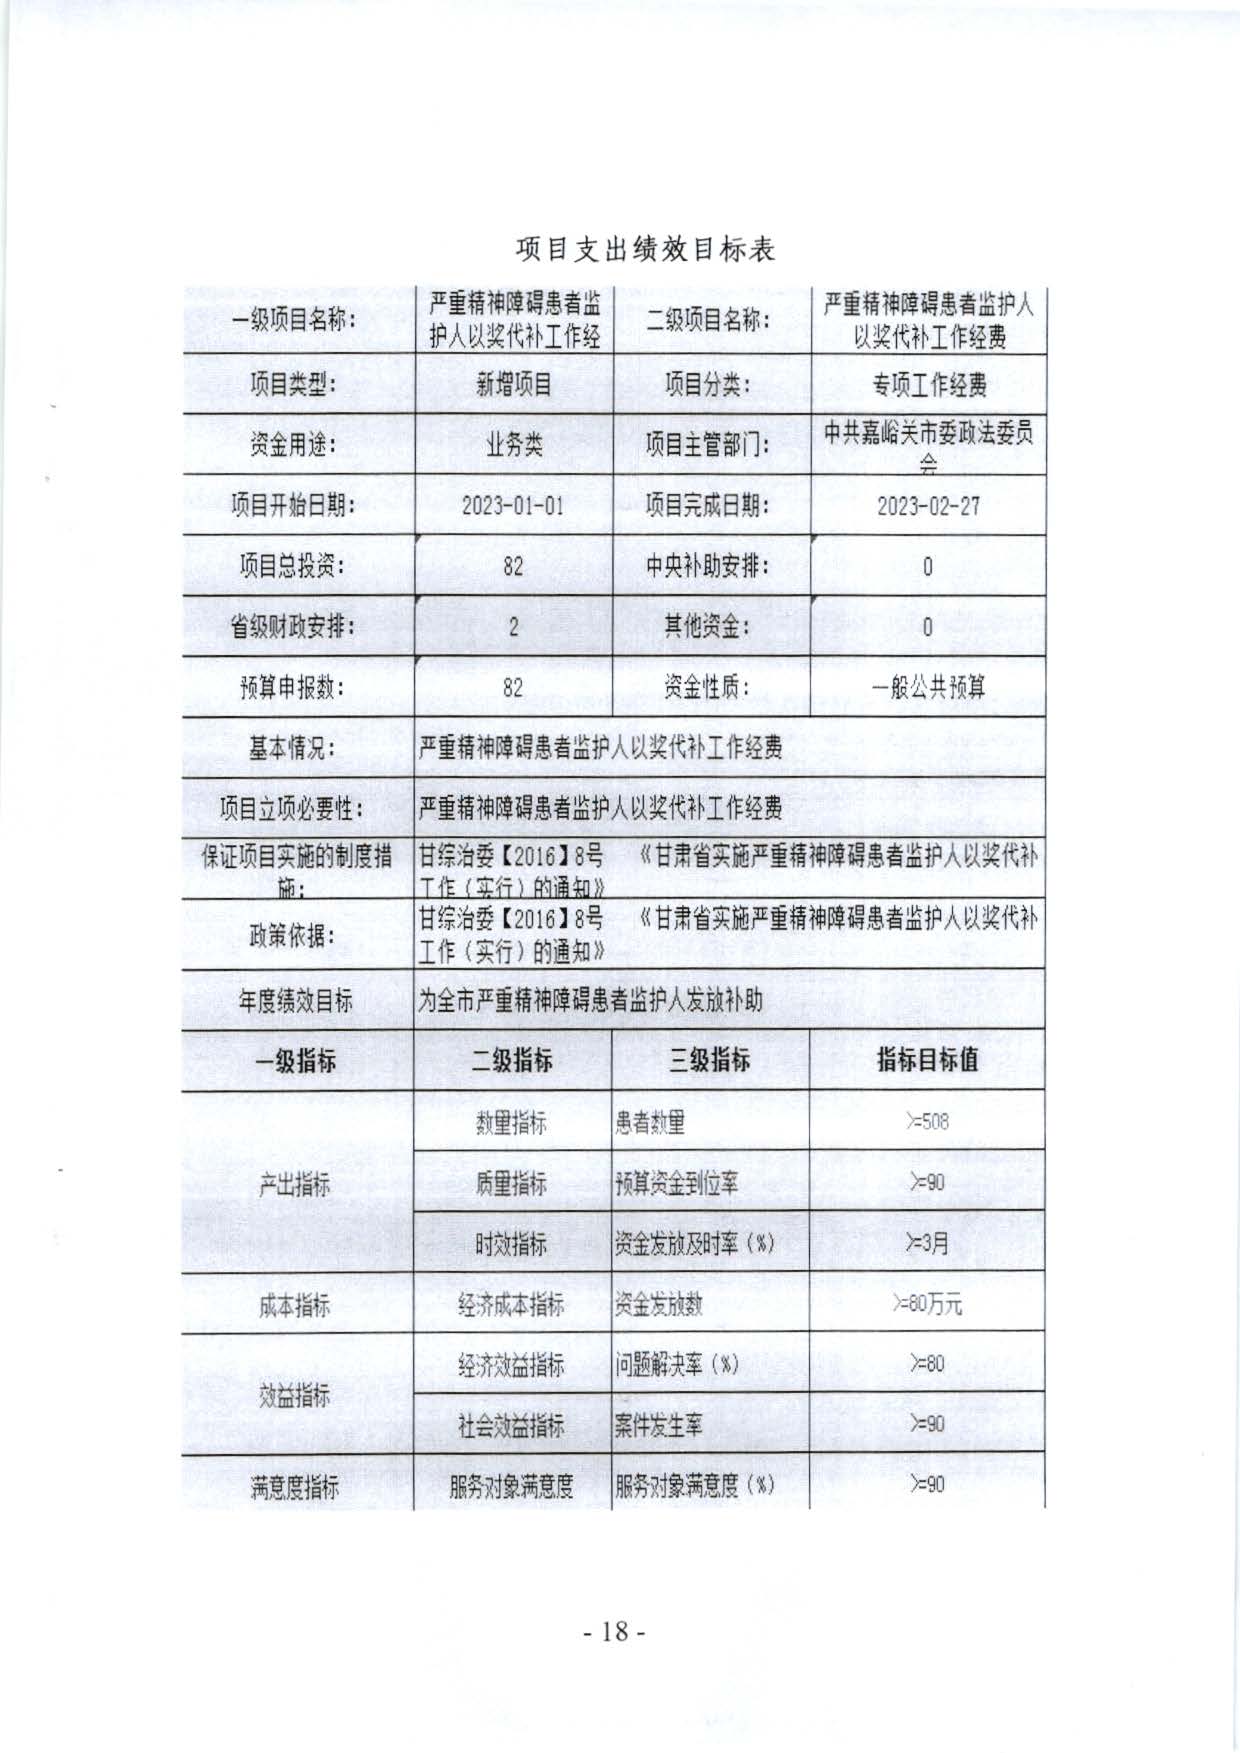 嘉峪关市委政法委2023年预算公开情况说明(1)_页面_18